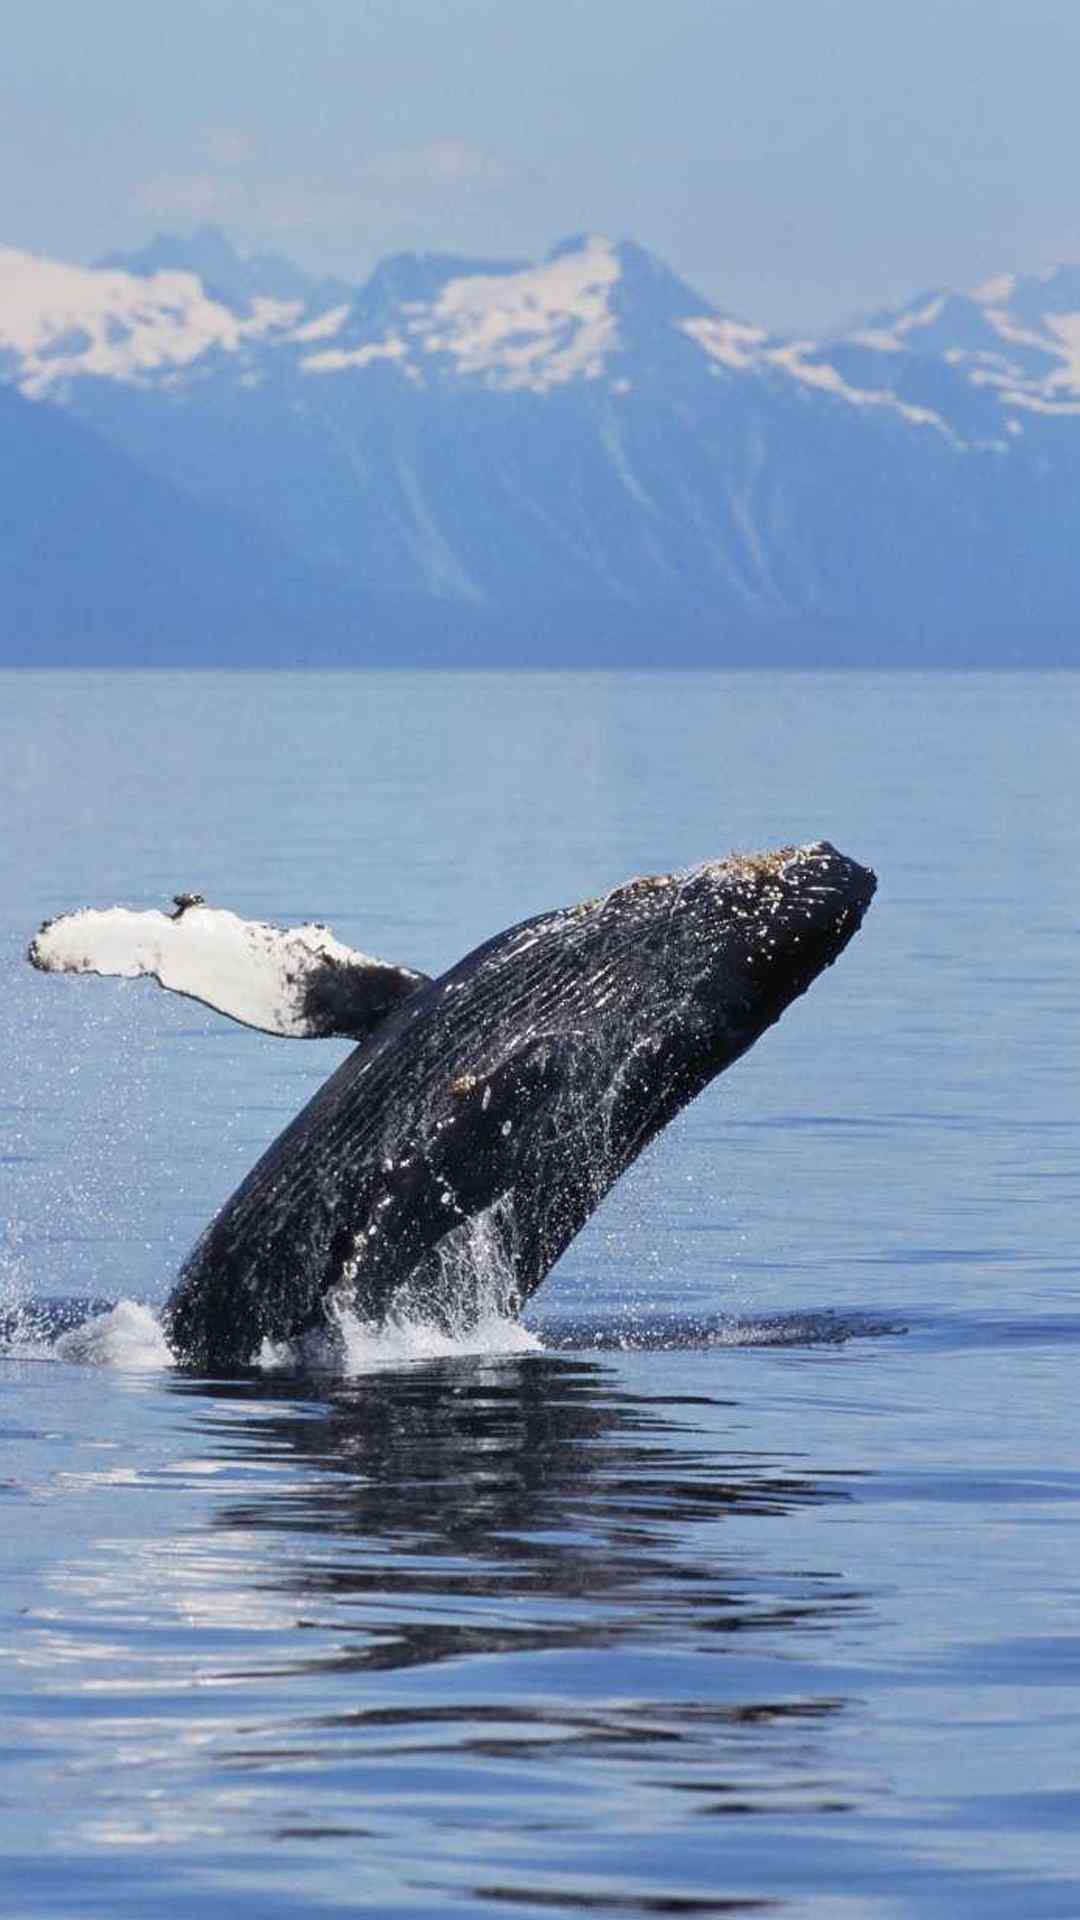 帅气鲸鱼跃出水面蓝色背景清新治愈手机壁纸